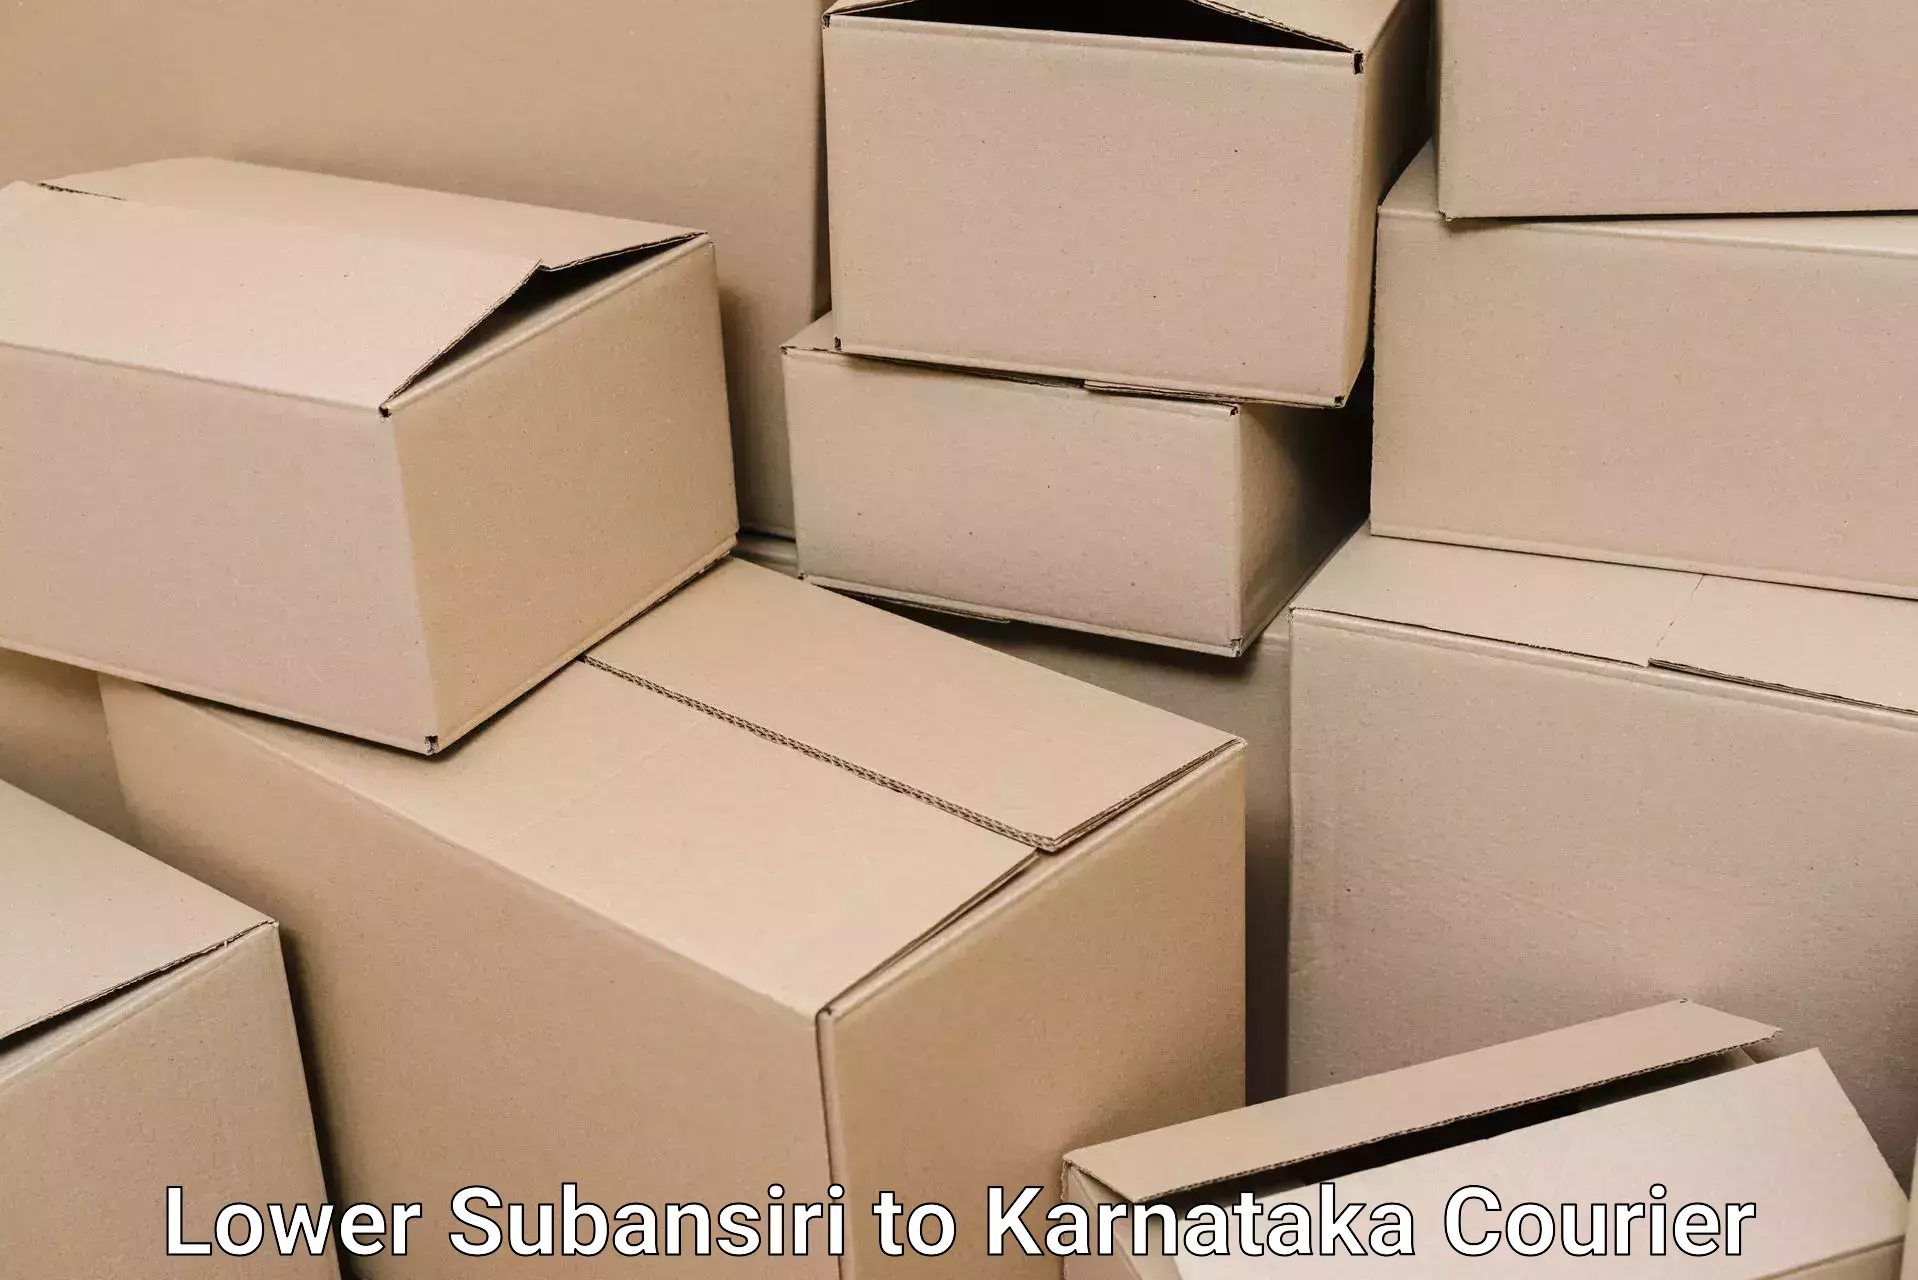 Quality furniture shipping Lower Subansiri to Manipal